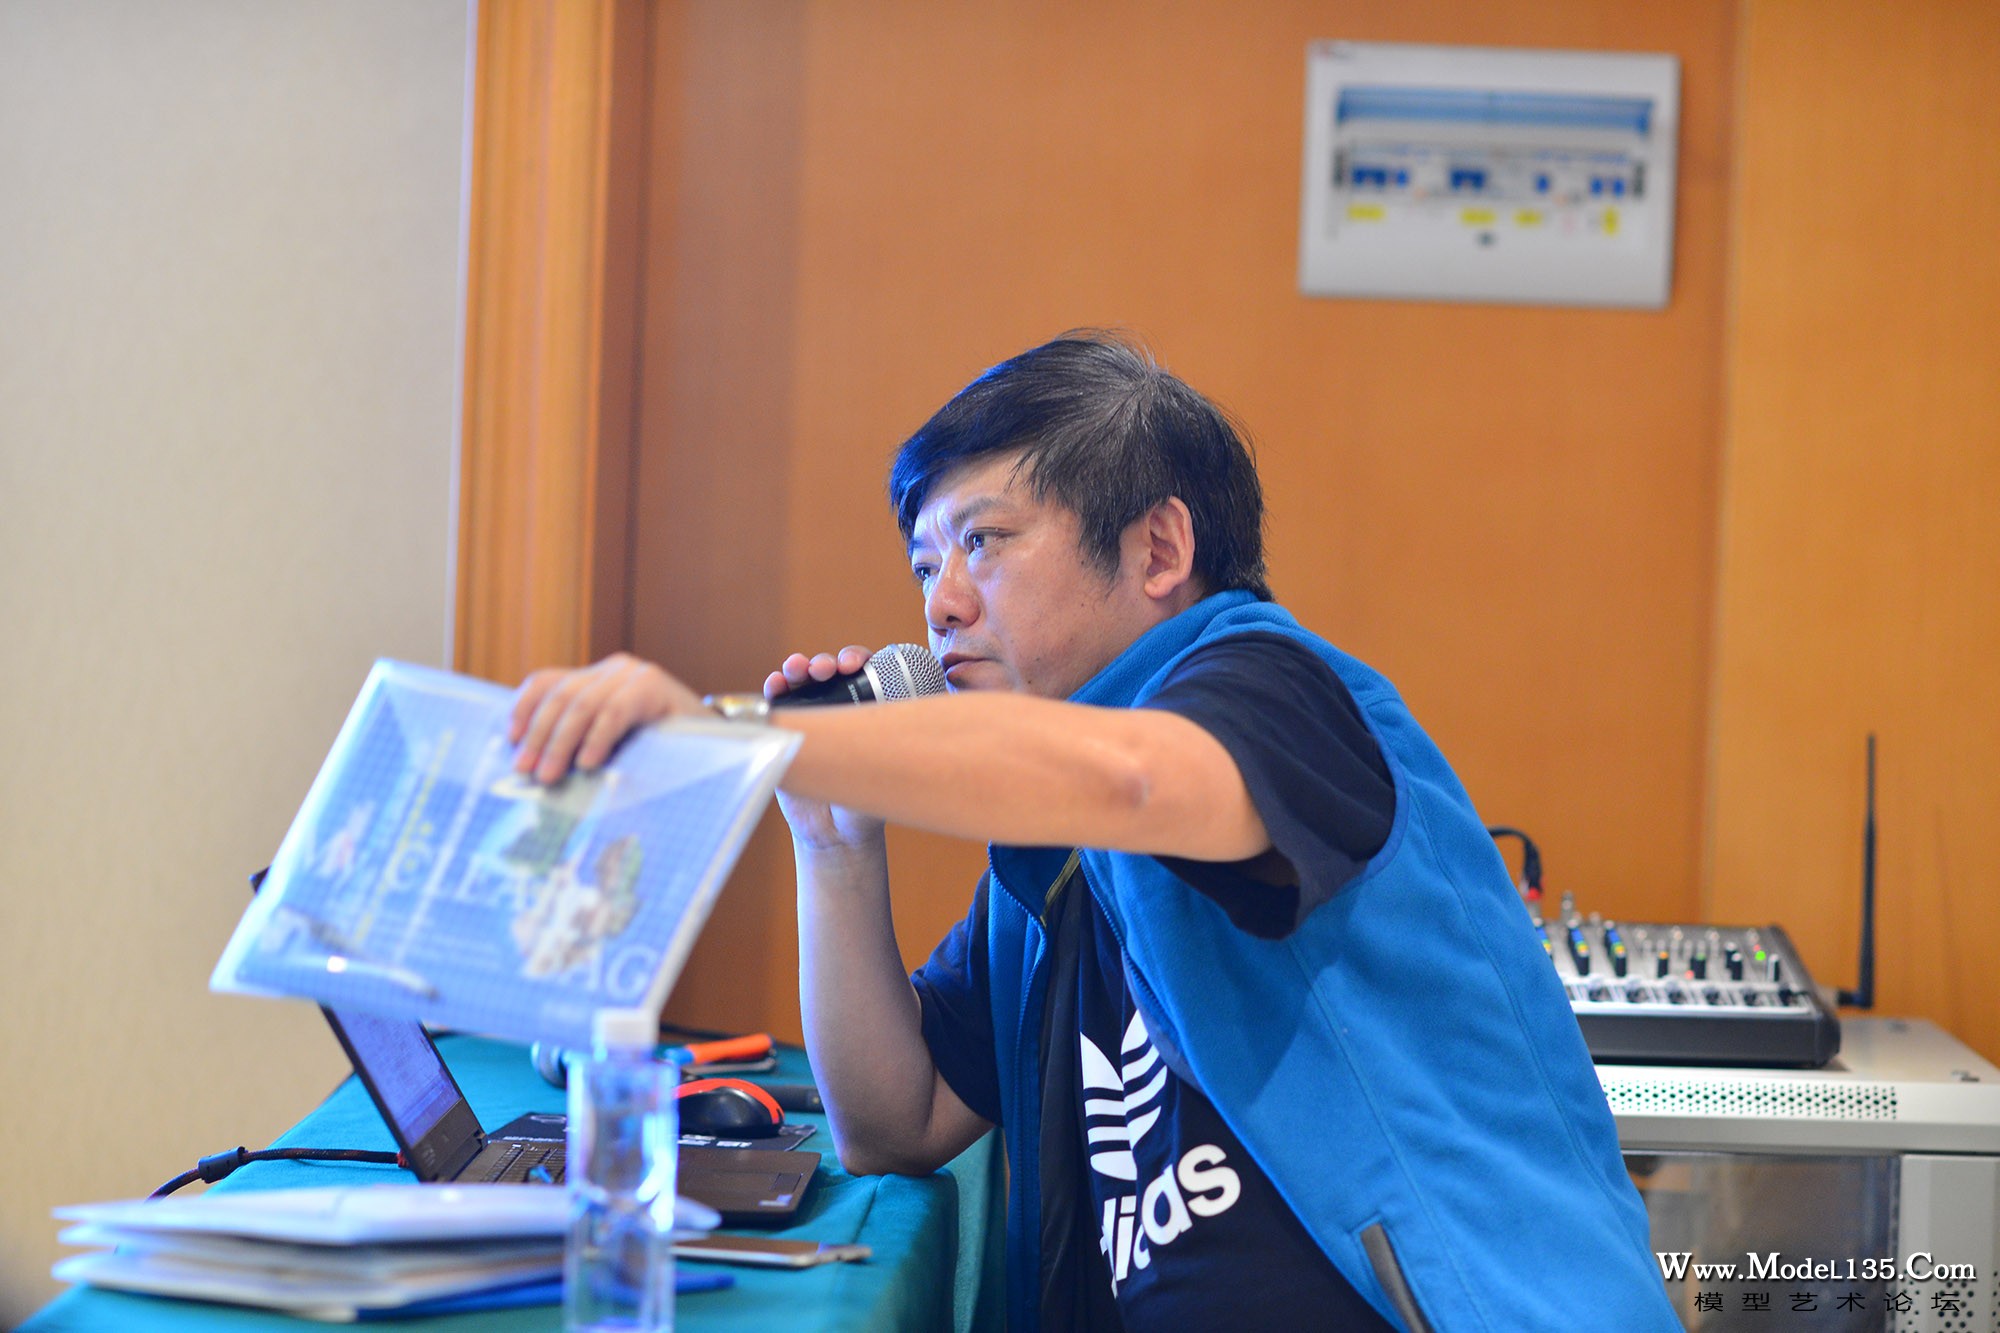 总裁判长邹斌老师在讲解装辅料和工具的A4文件袋要求